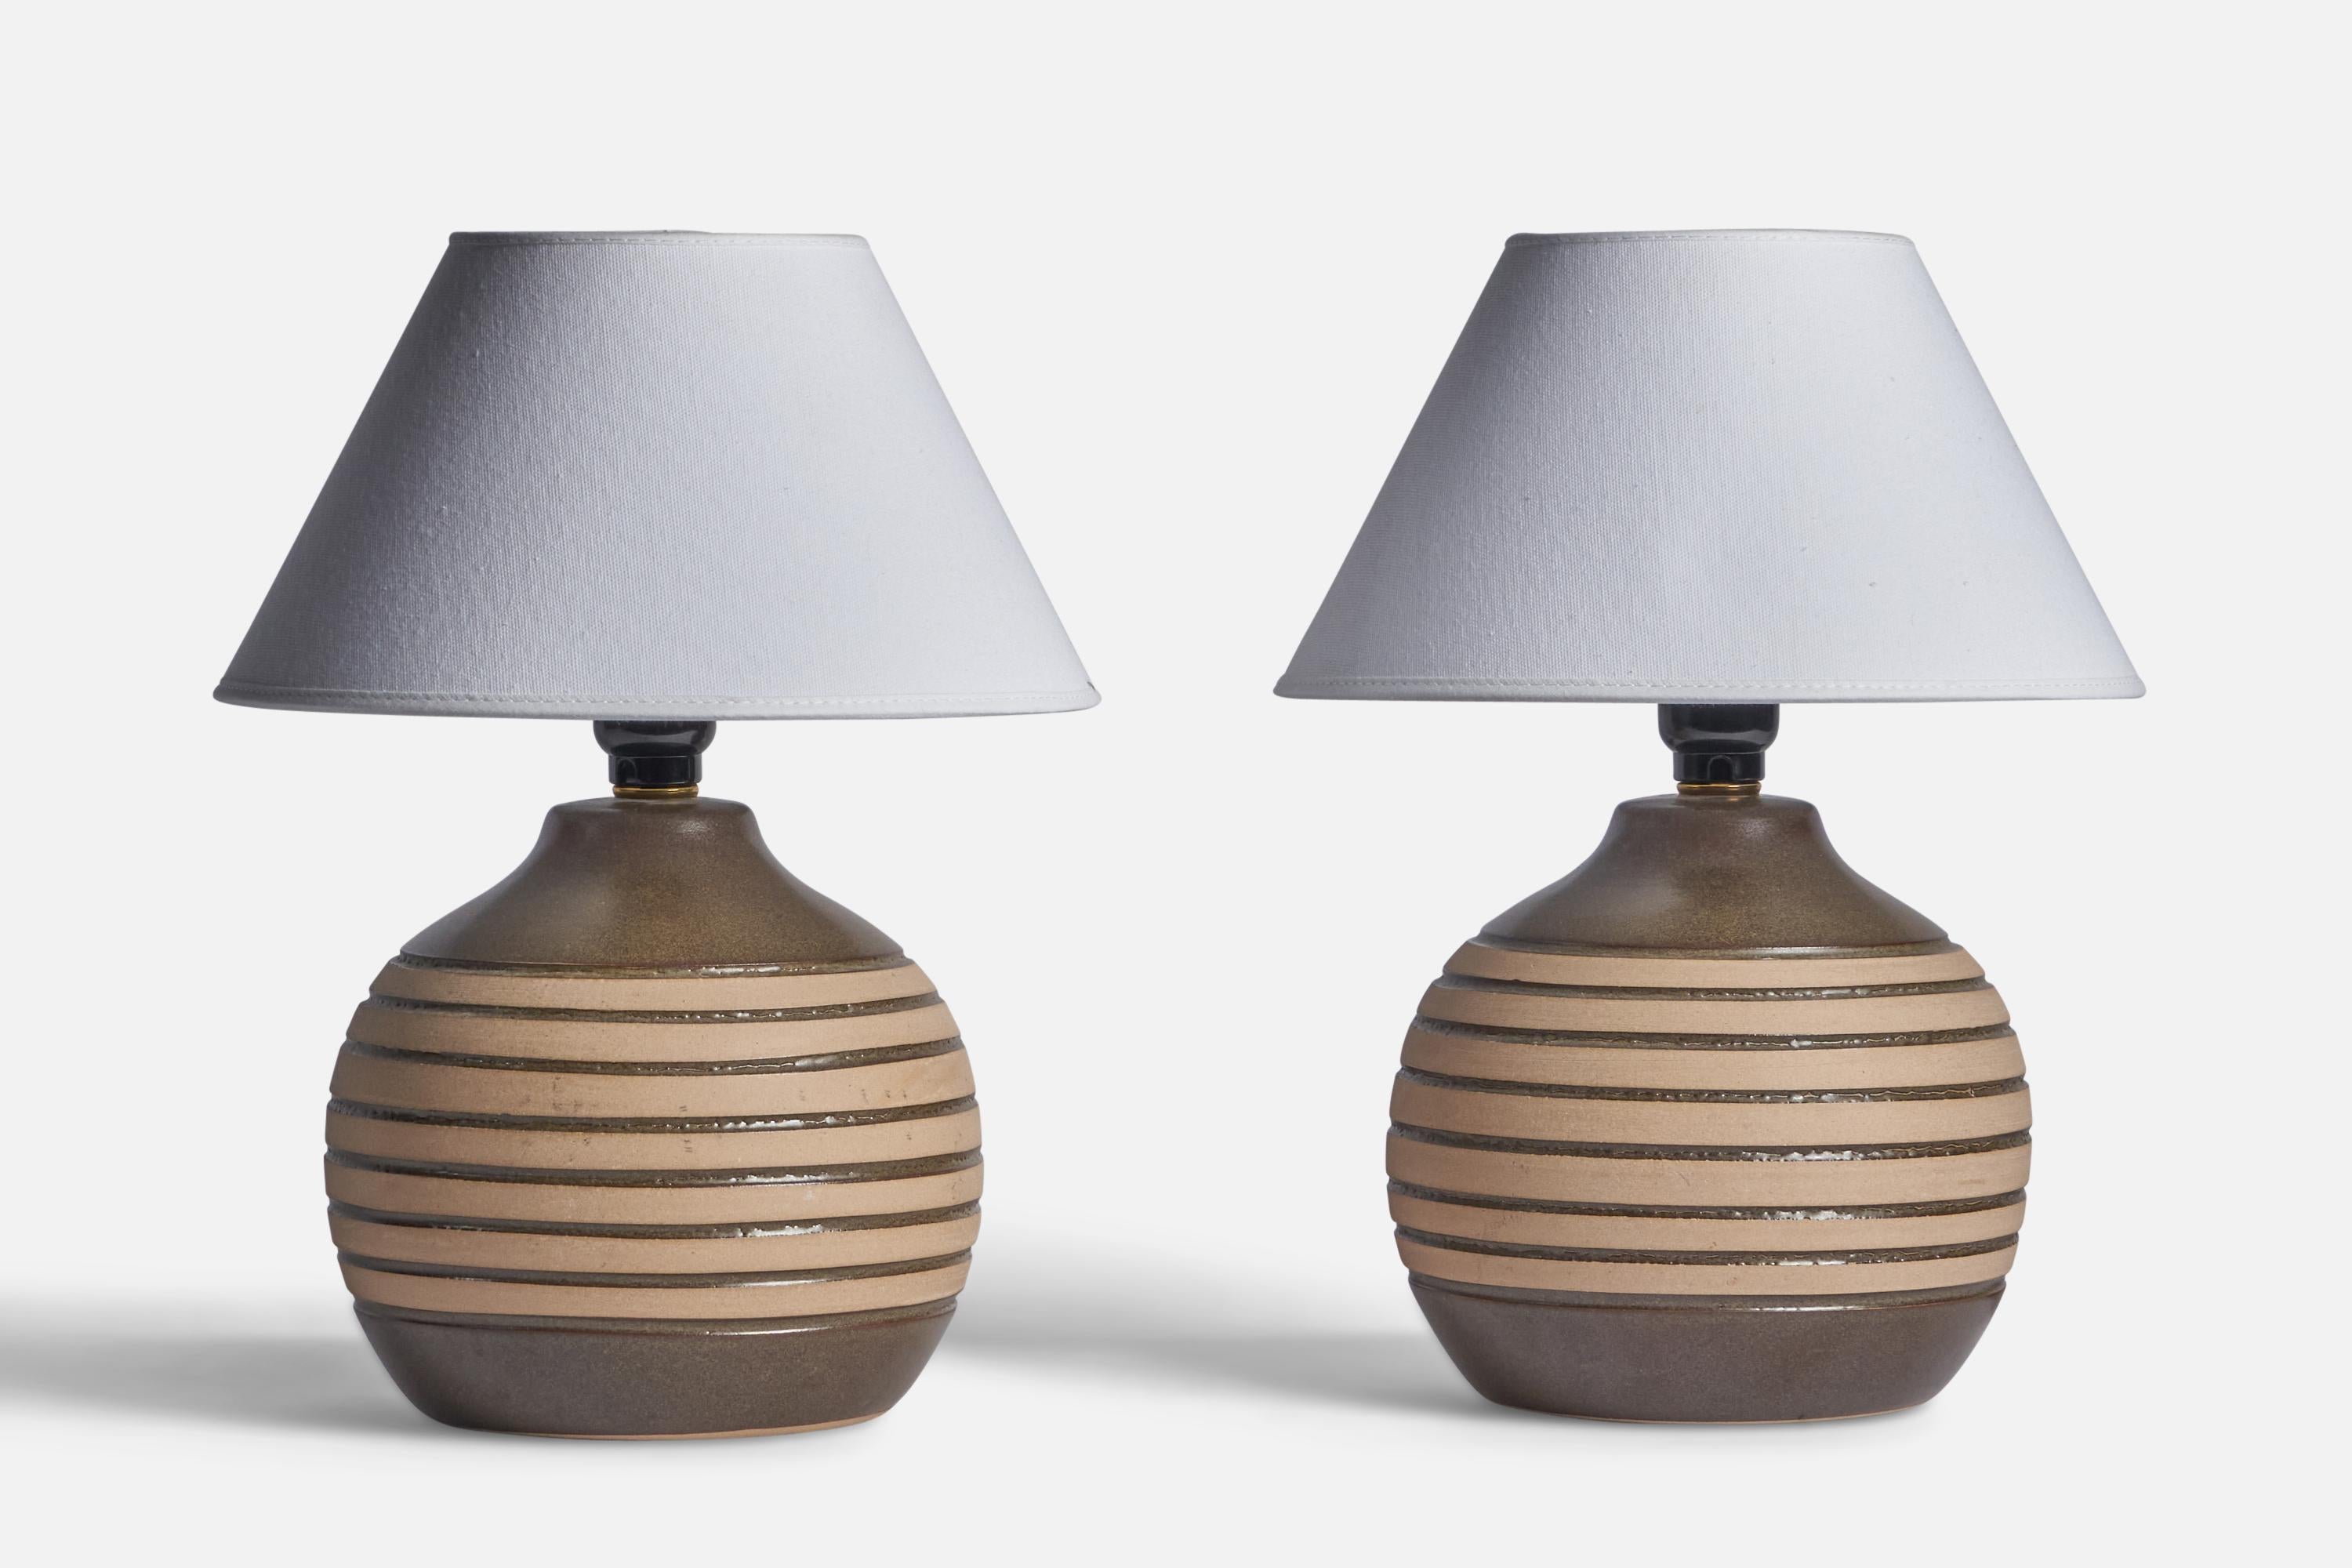 Ein Paar grau und beige glasierte Keramik-Tischlampen, entworfen von Jane & Gordon Martz und hergestellt von Marshall Studios, USA, 1960er Jahre.

Abmessungen der Lampe (Zoll): 10,25